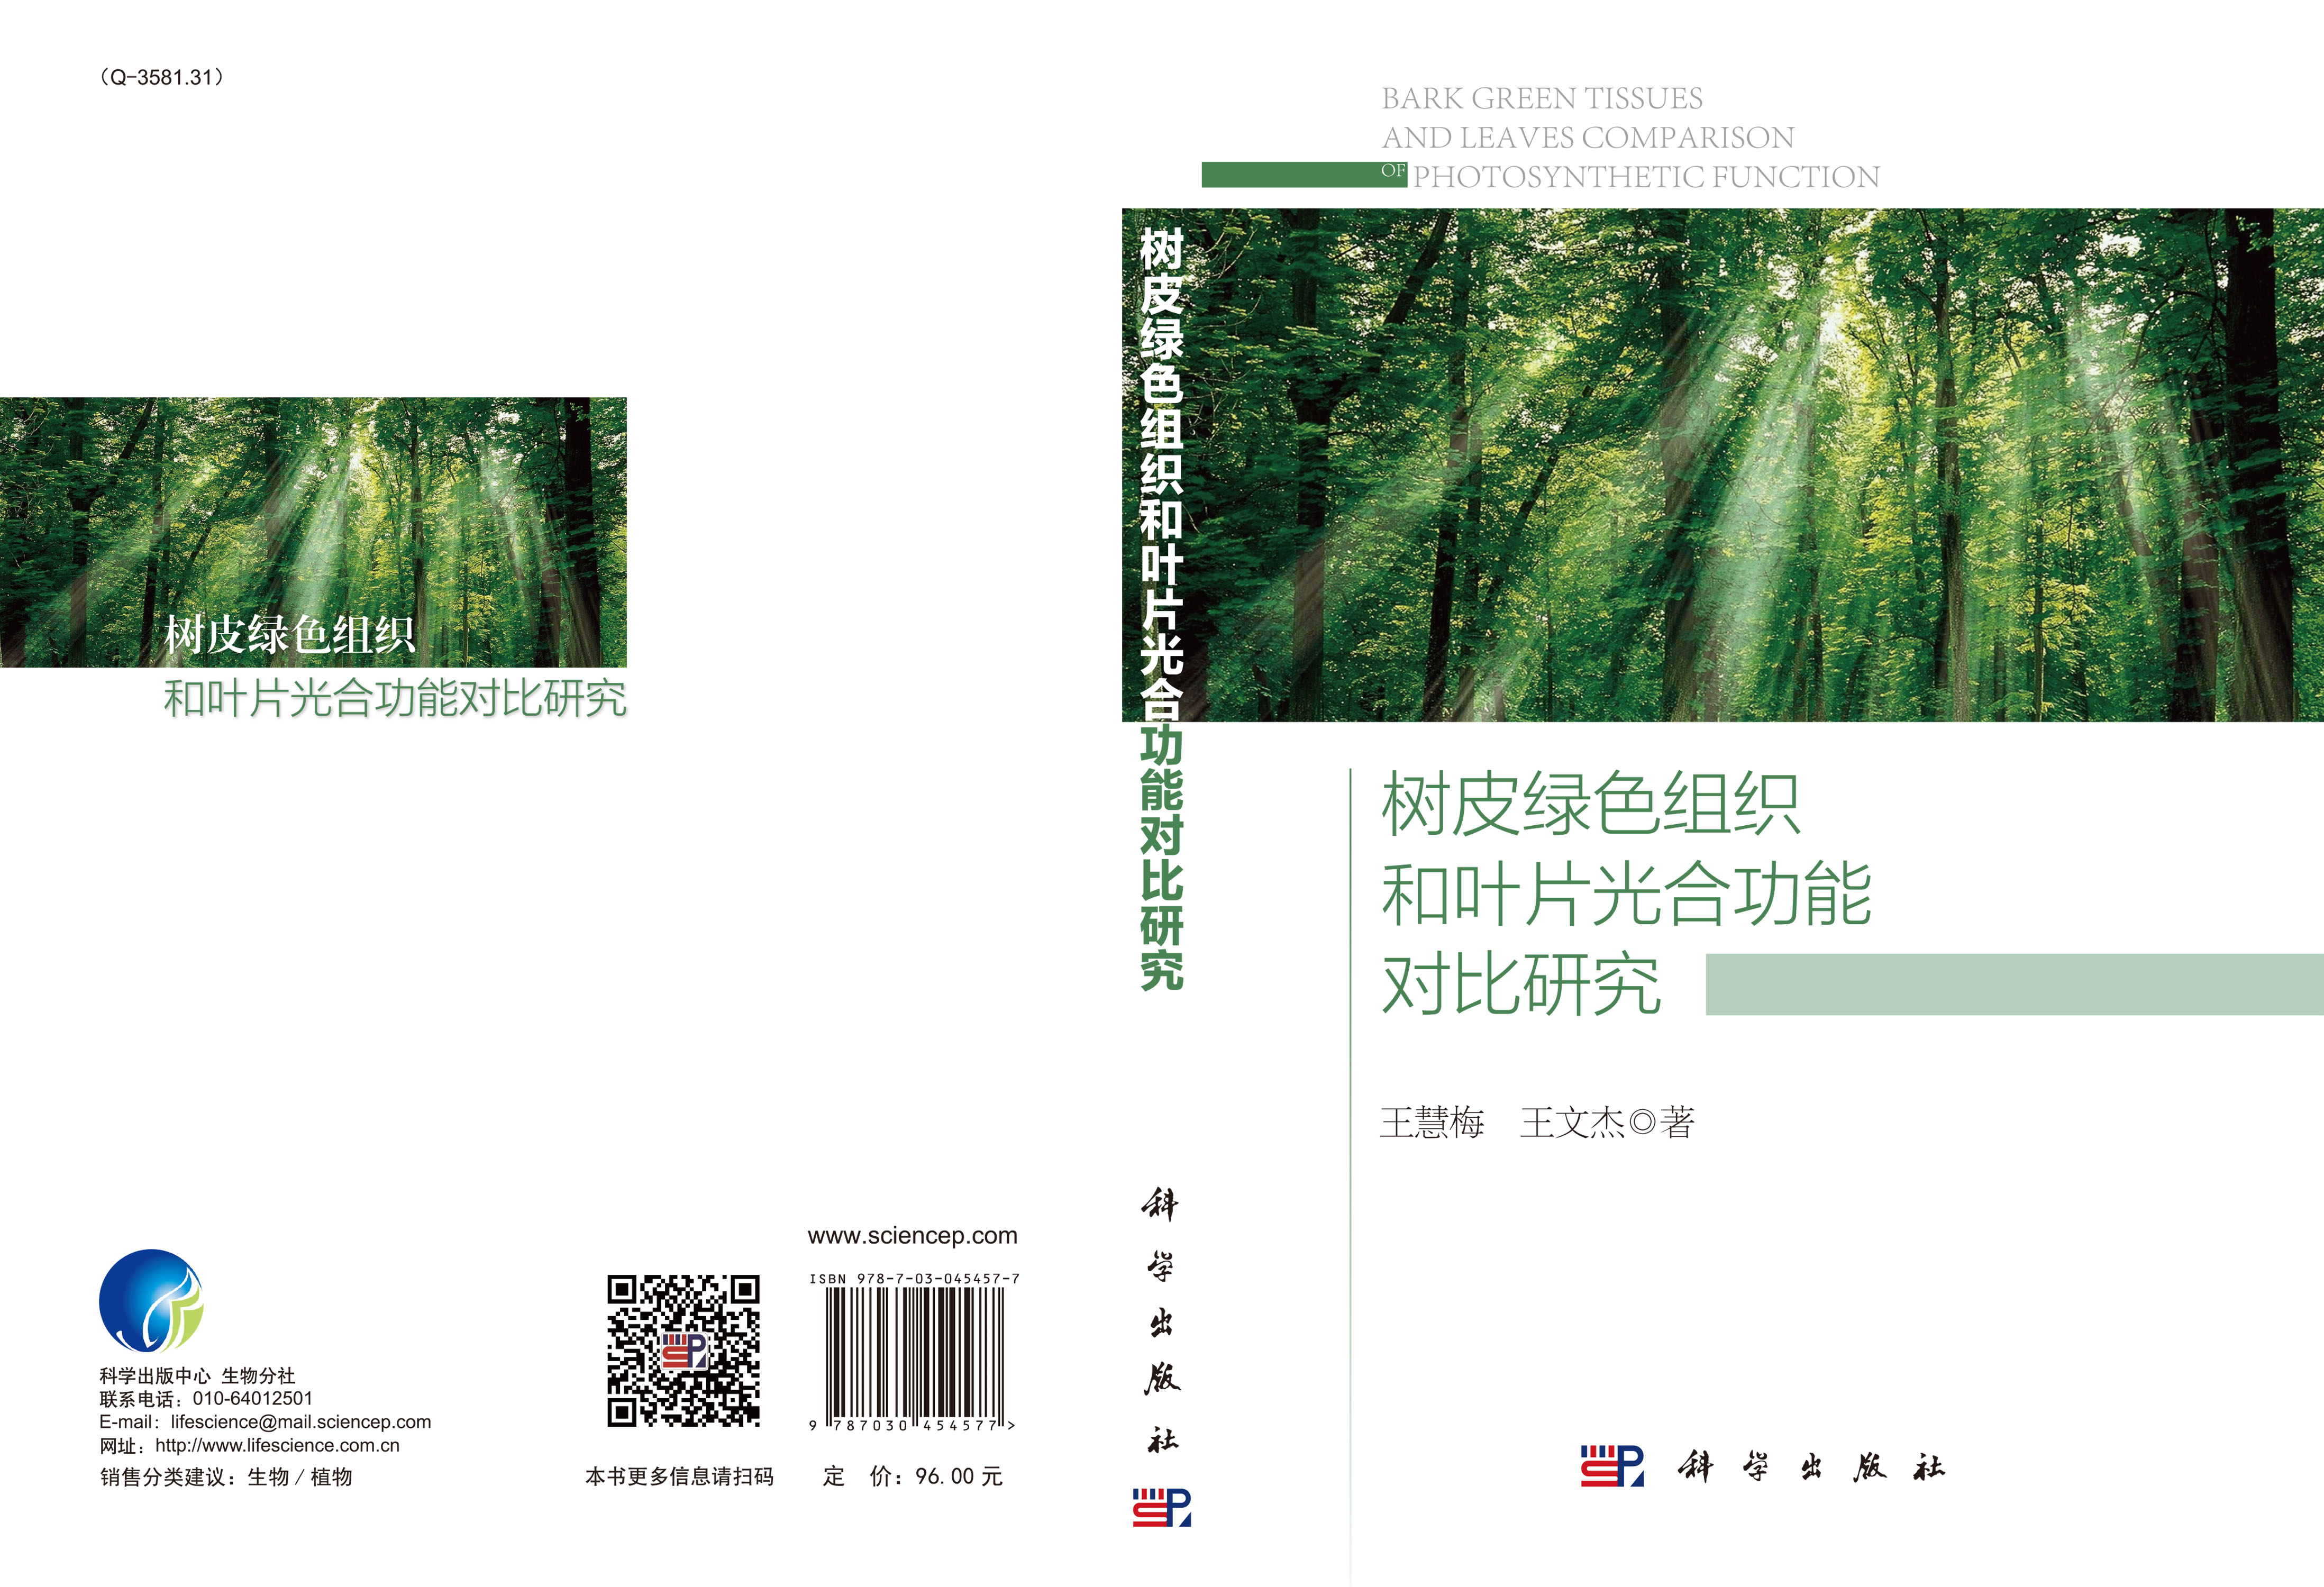 树皮绿色组织和叶片光合功能对比研究